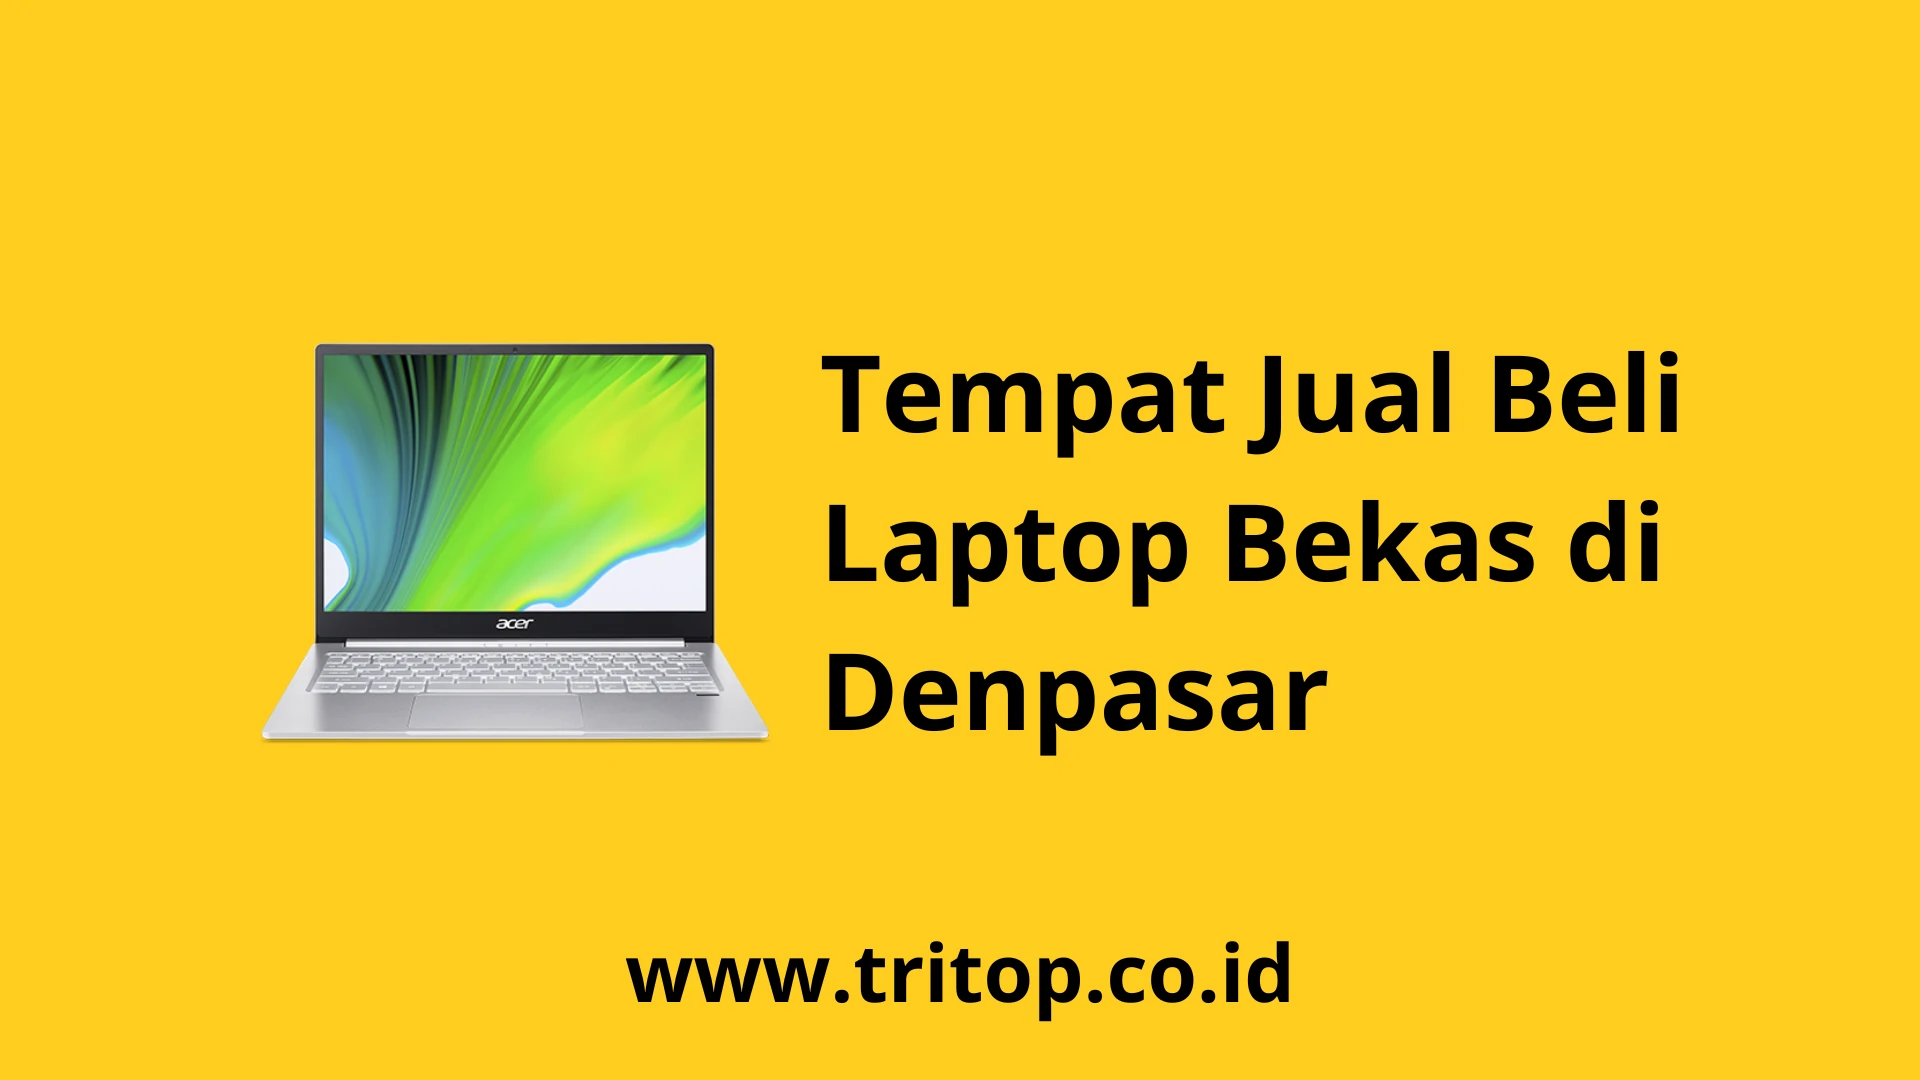 Tempat Jual Beli Laptop Bekas di Denpasar www.tritop.co.id